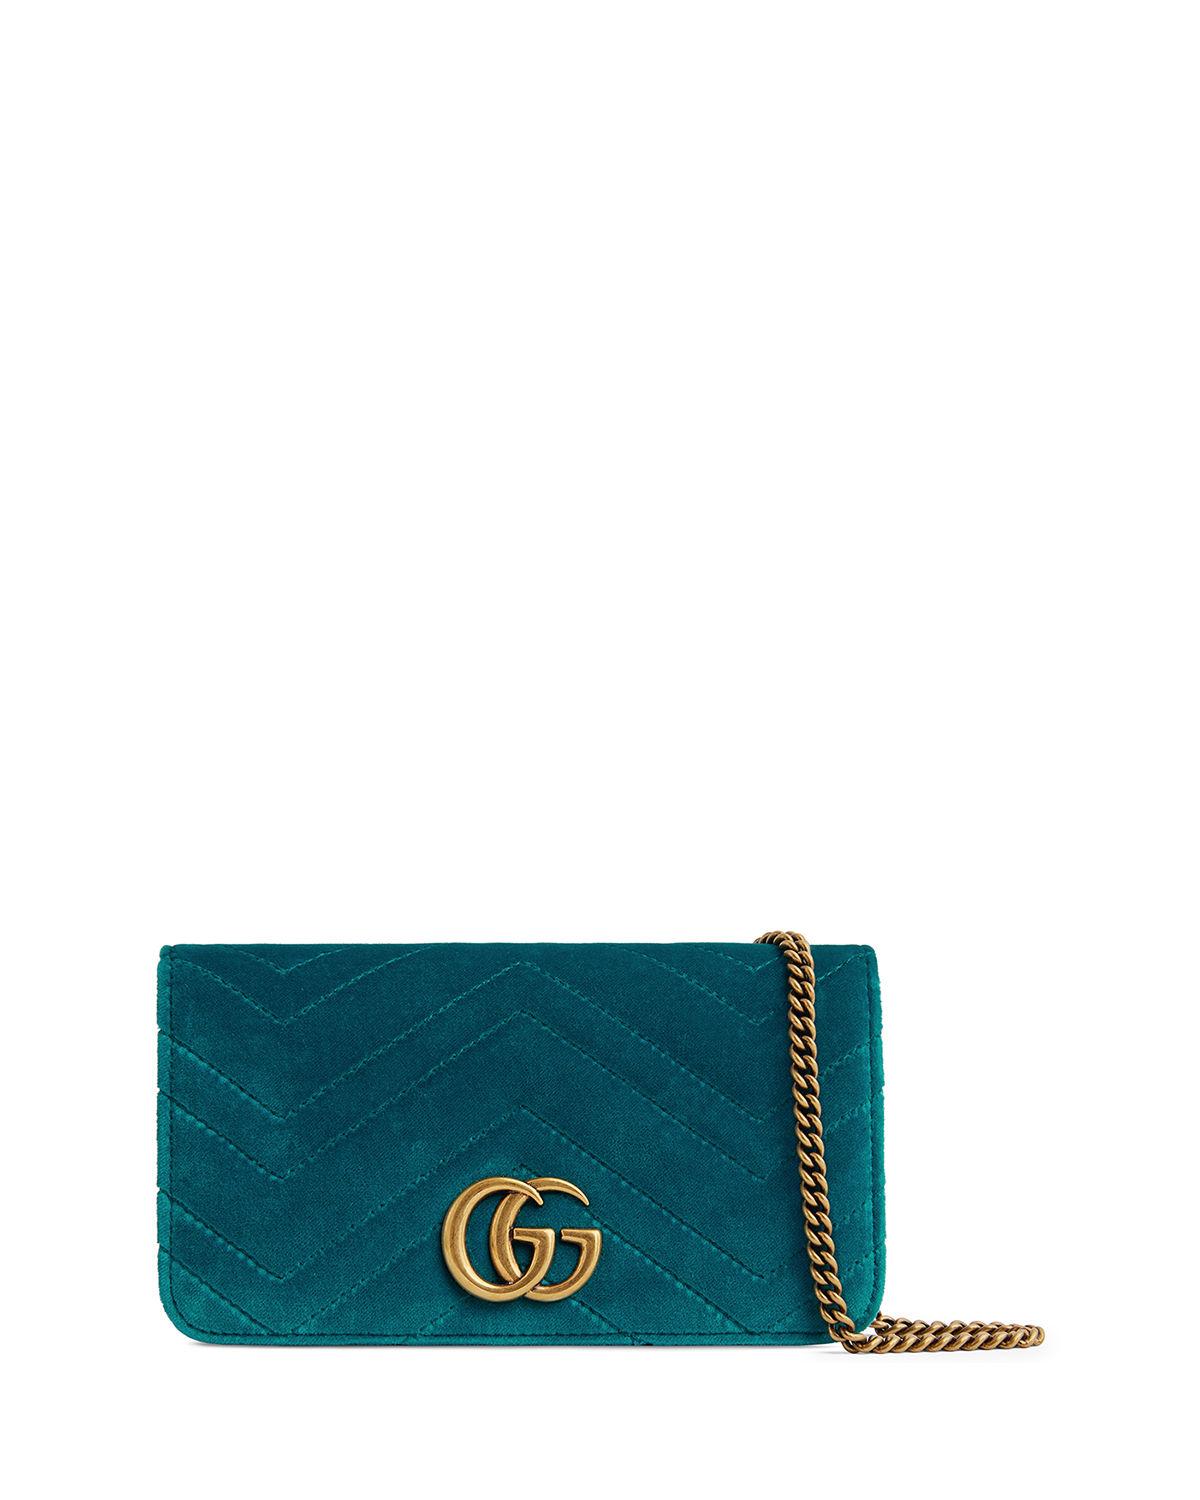 Gucci Gg Marmont Velvet Crossbody Bag, Turquoise In Blue | ModeSens